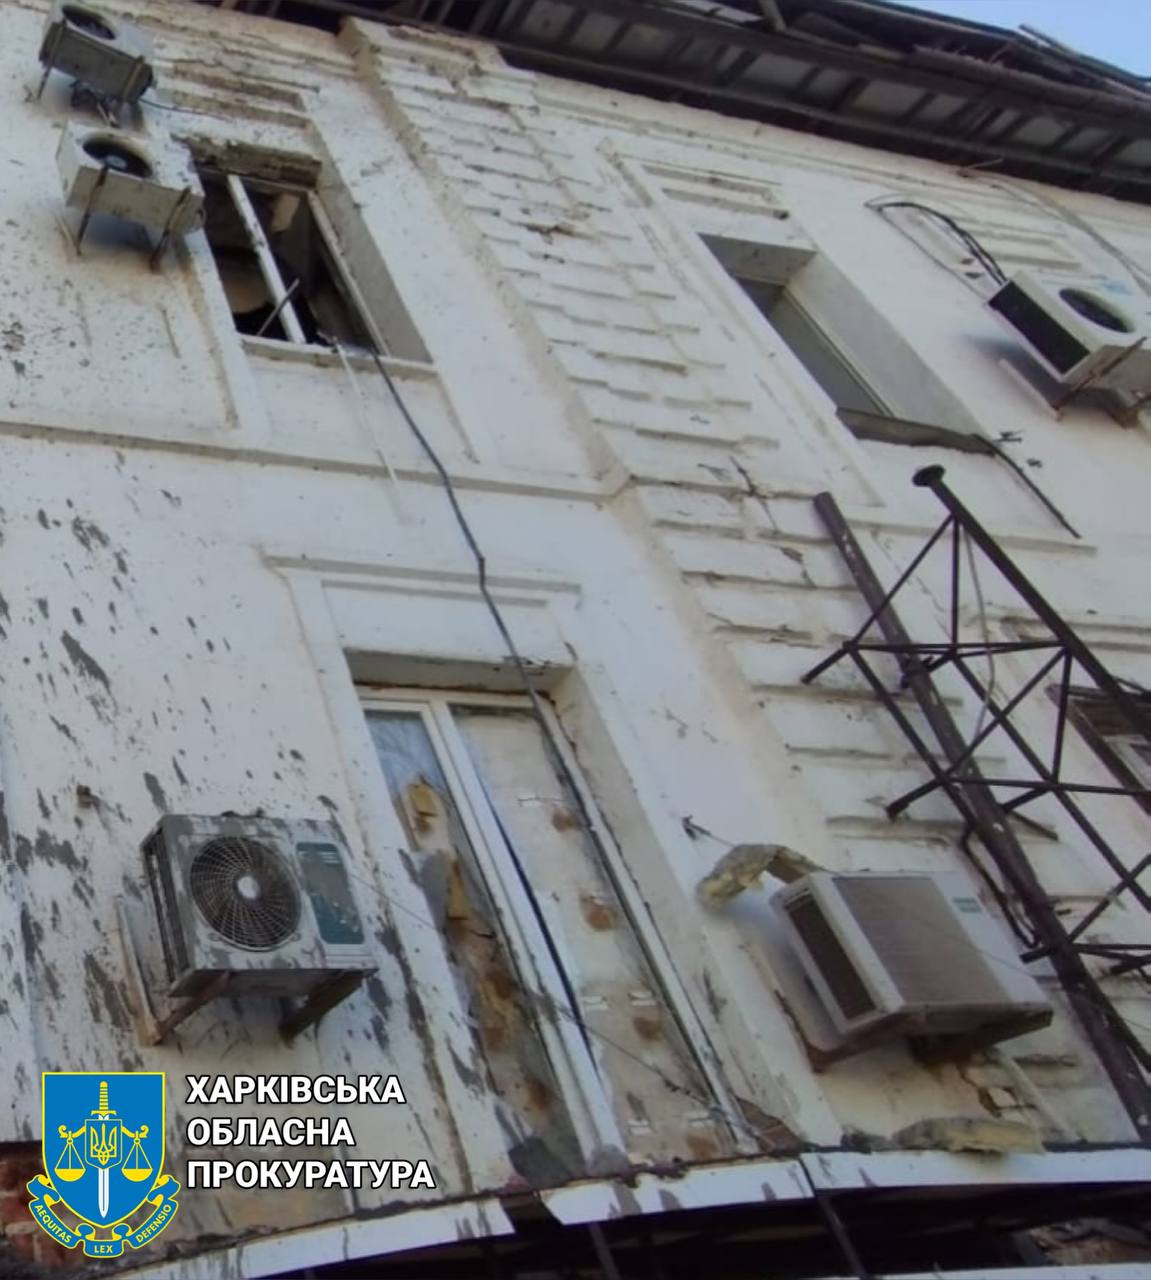 Ракетний удар пошкодив магазини, житлові будинки і офіси у Харкові